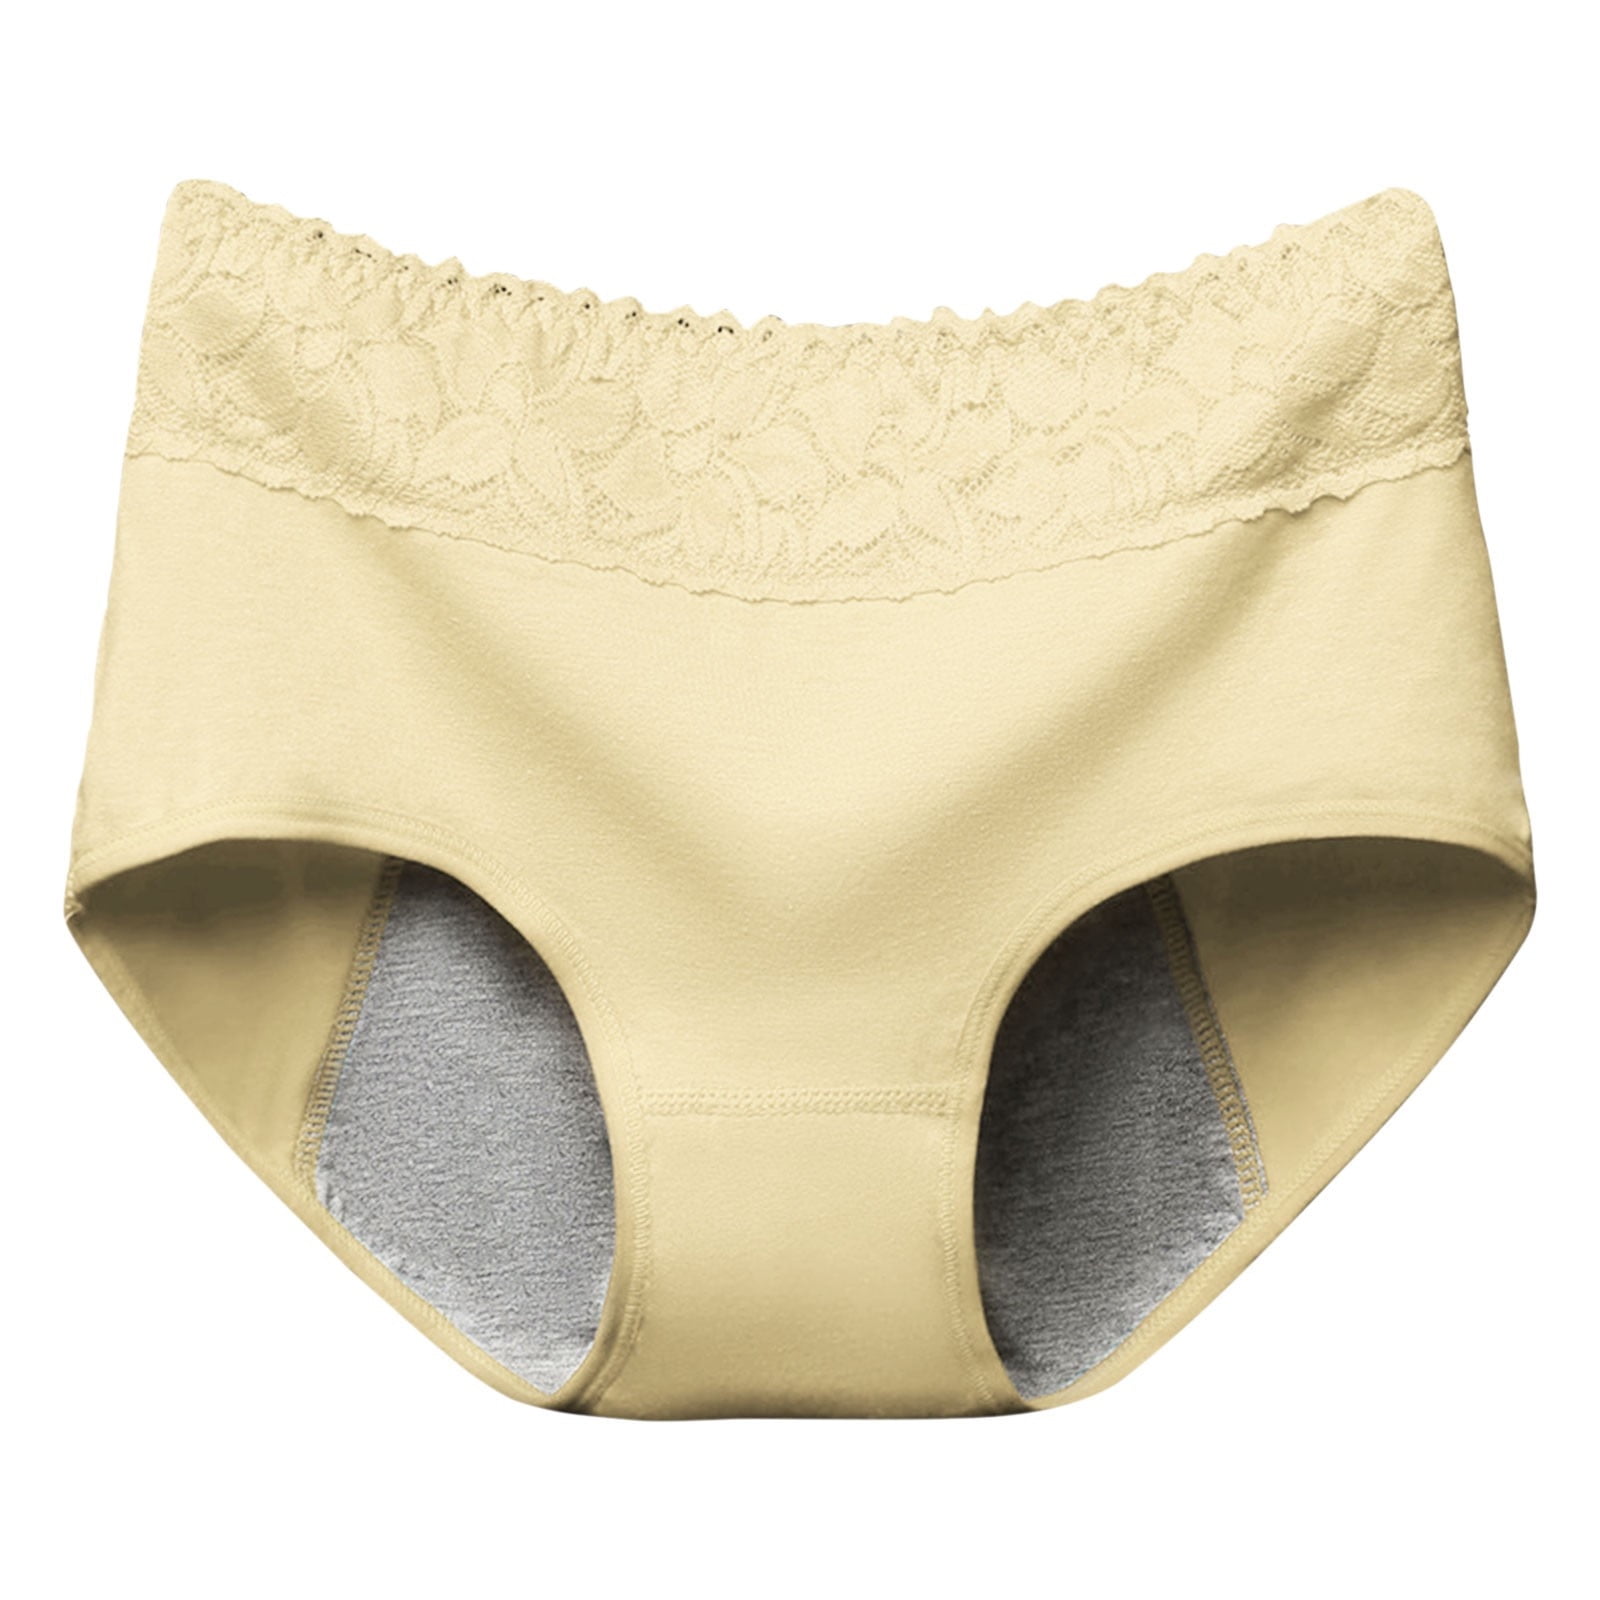 CLZOUD Female Underwear Polyester Women'S Pants Anti Side Leakage